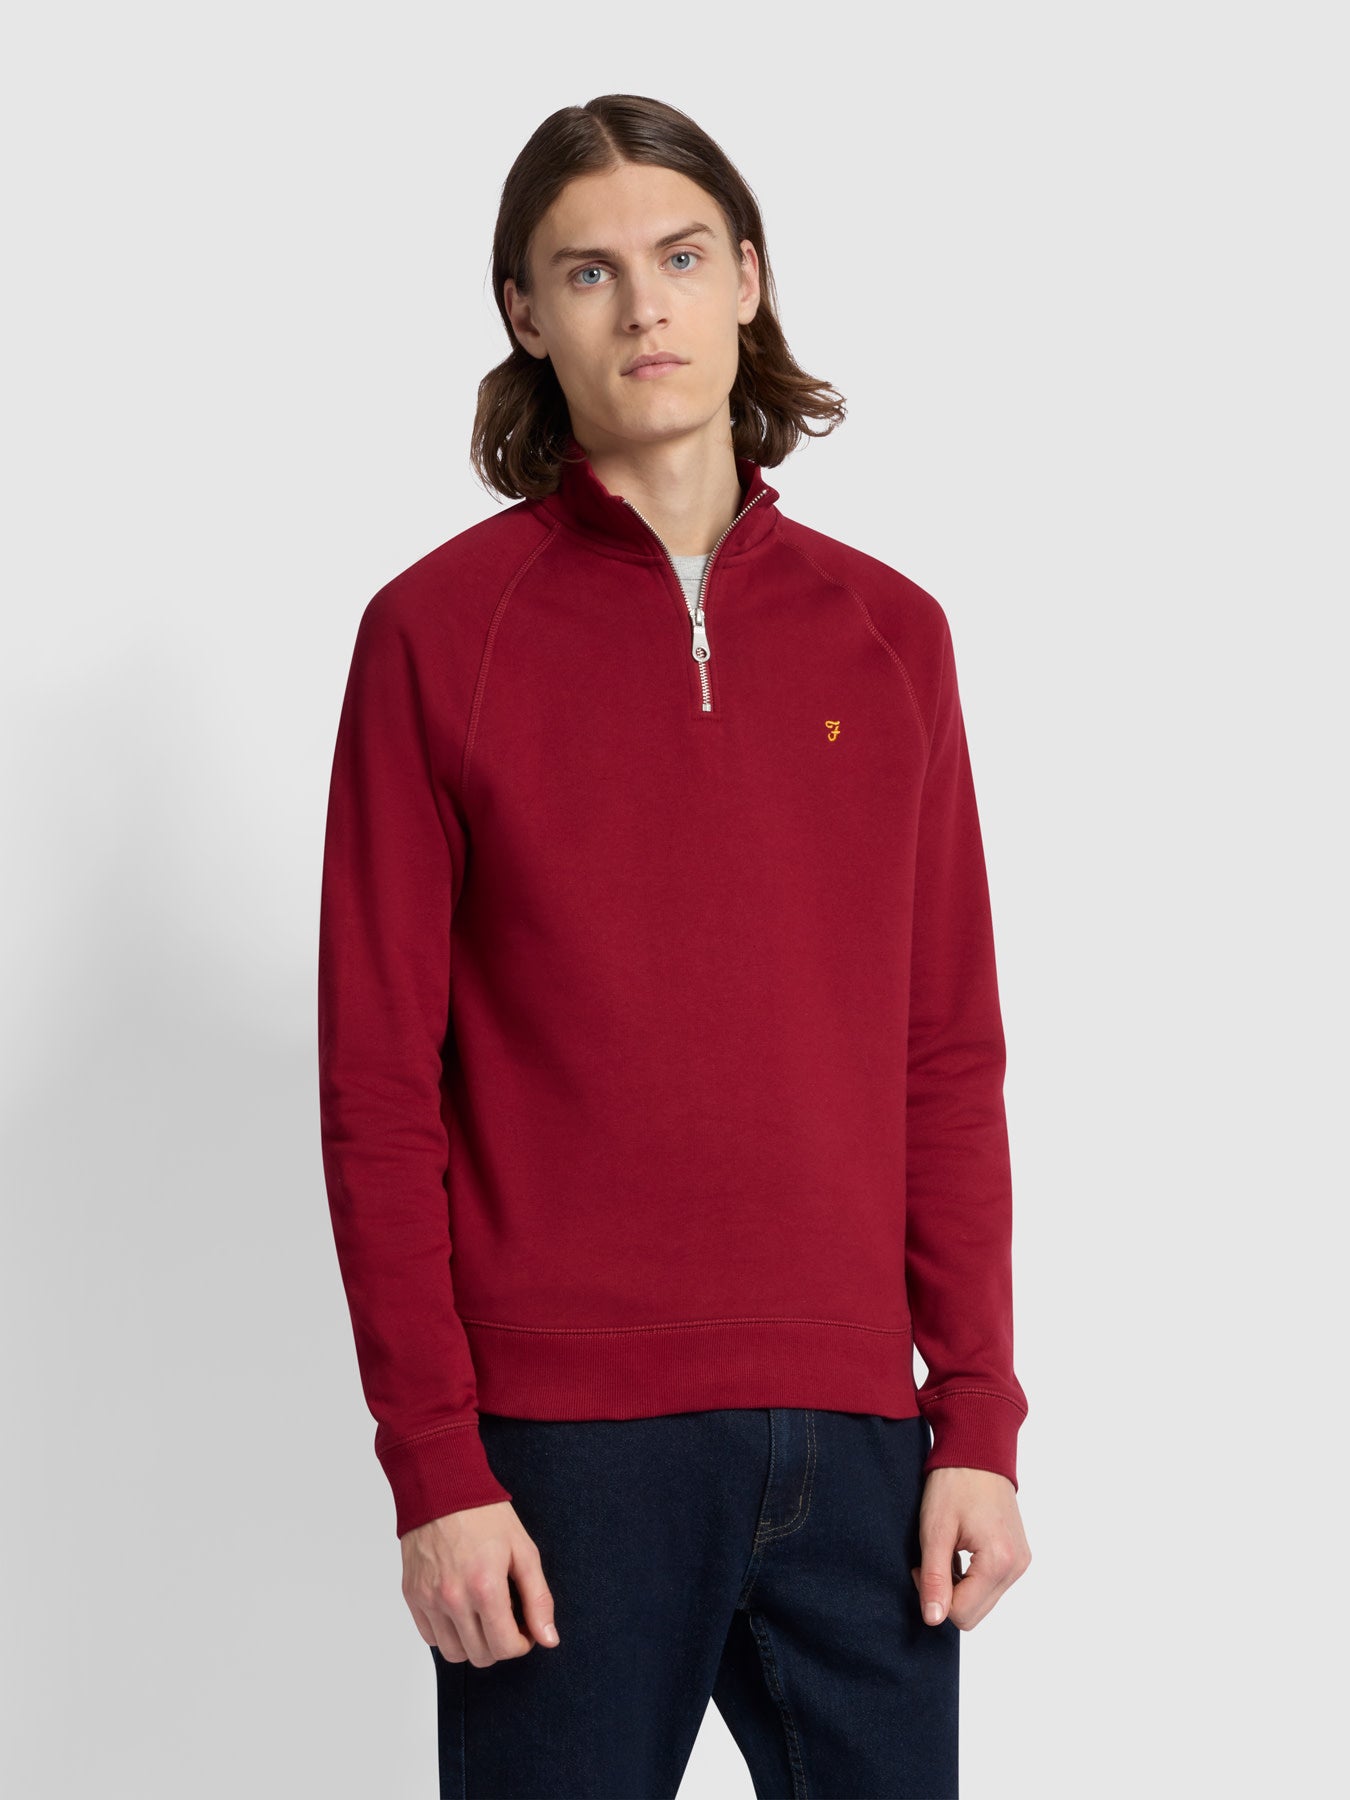 View Jim Slim Fit Quarter Zip Sweatshirt In Warm Red information